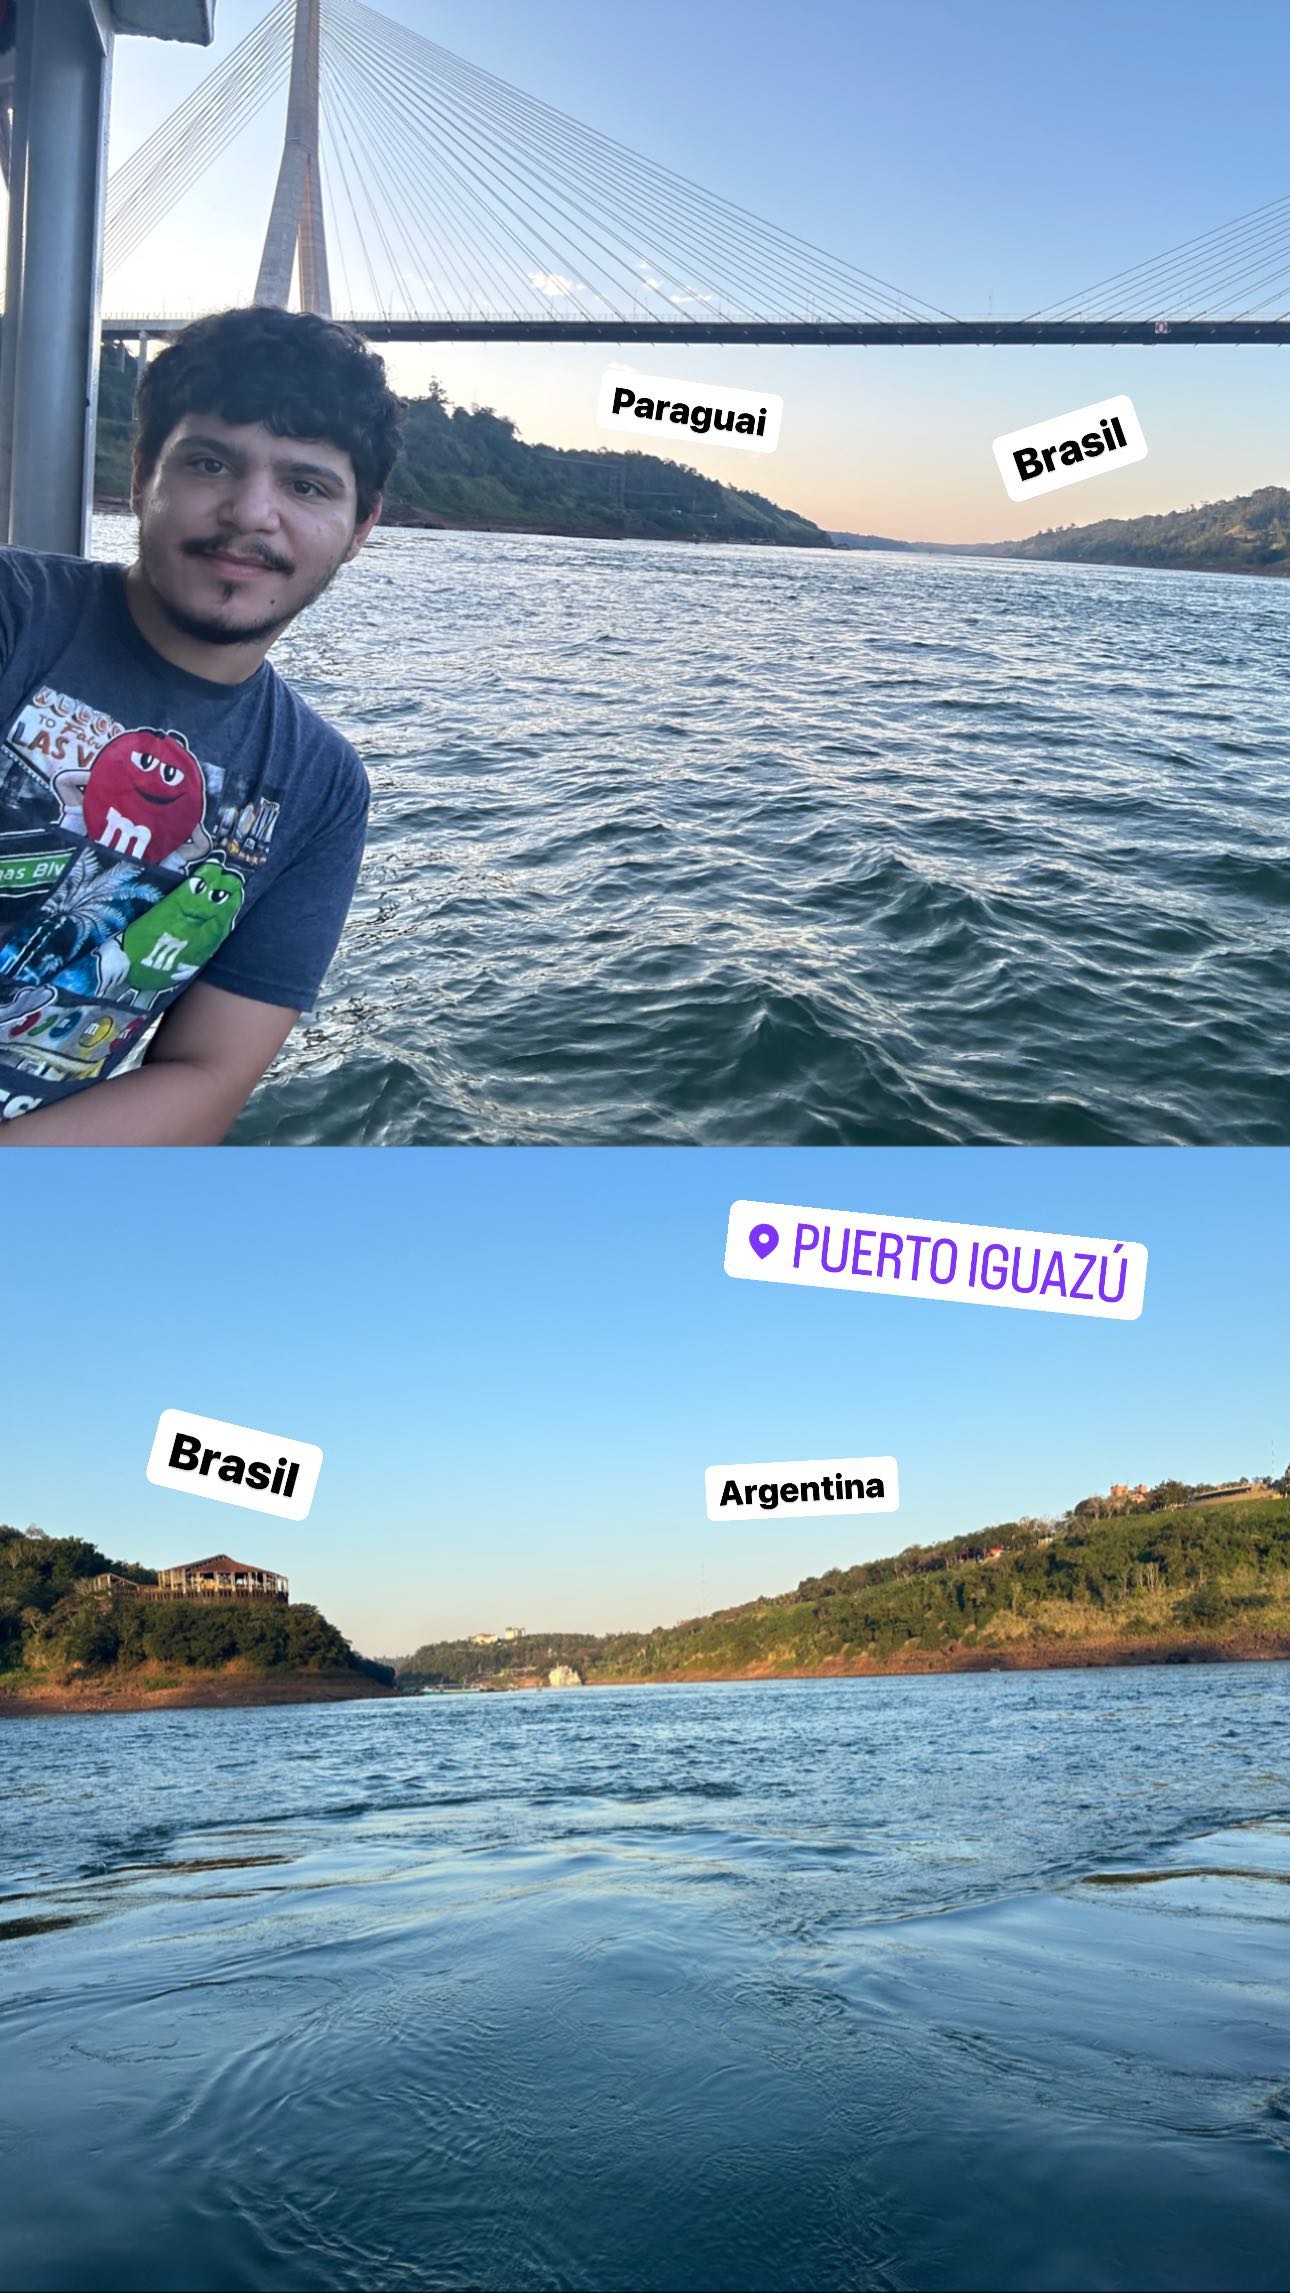 Paraguay/Brazil - Brazil/Argentina